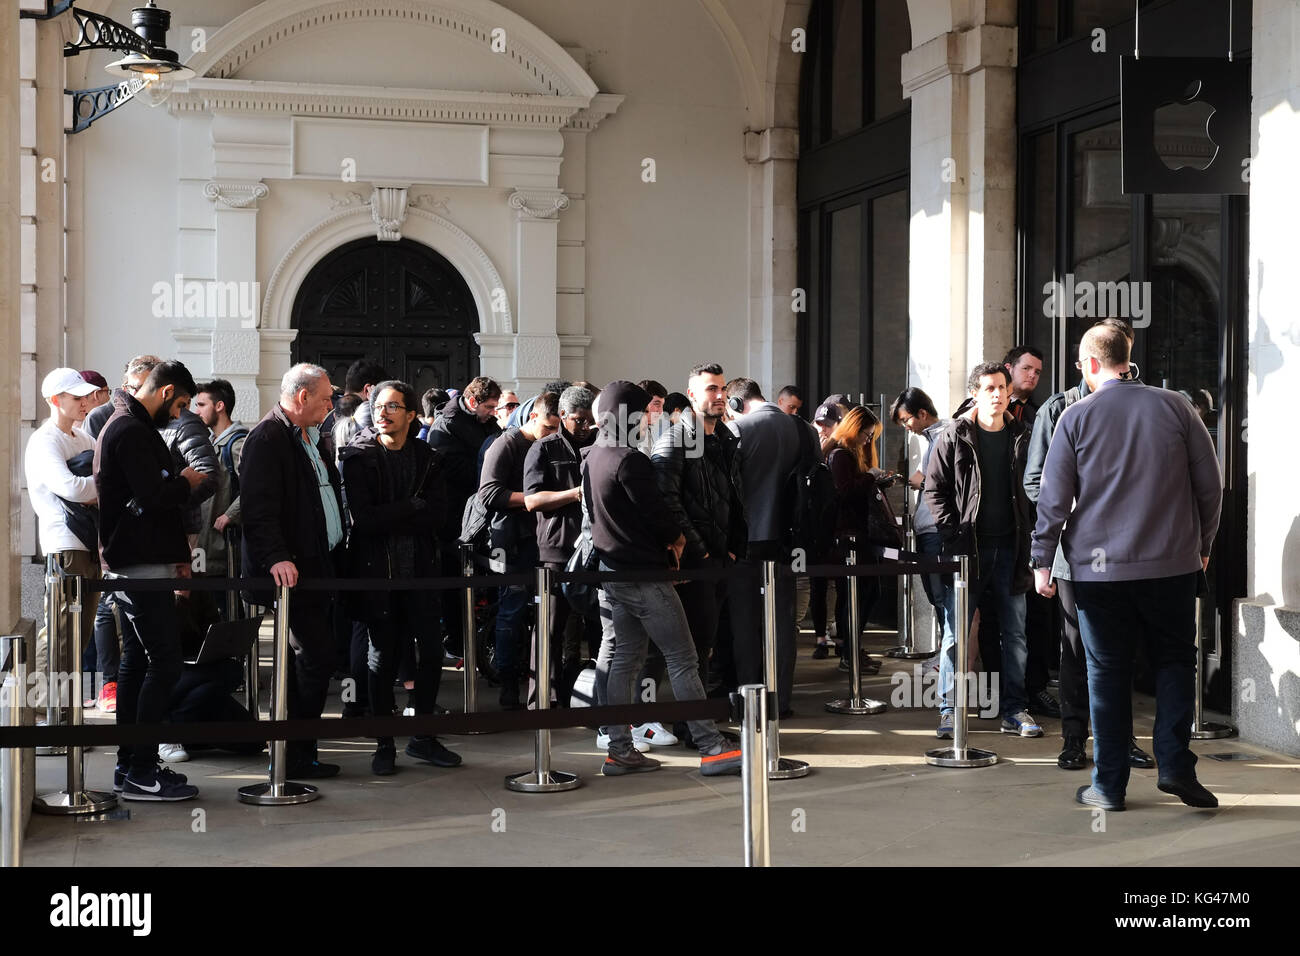 Covent Garden, London, Großbritannien. 3.. November 2017. In einem der Flagship-Stores von Apples in Londons Covent Garden gab es den ganzen Tag lang Warteschlangen, mit aufgebauten Absturzbarrieren und Sicherheitsvorrichtungen, als das neue iPhone X auf den Markt kommt Nov 3. 2017 Quelle: Nigel Bowles/Alamy Live News Stockfoto